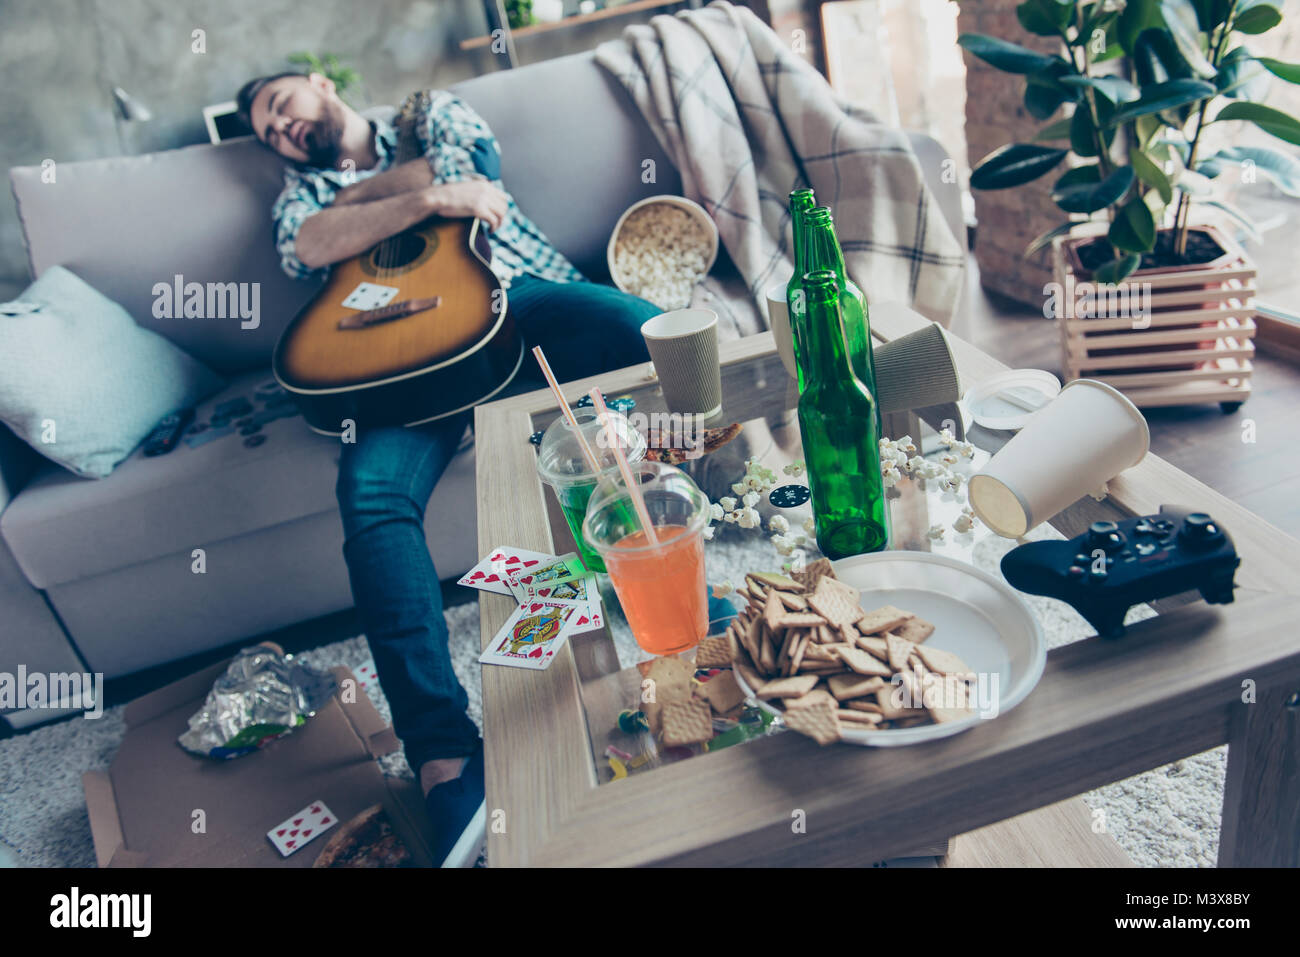 Nach der Party morgen, Bachelorette Party. Betrunken hipster umfasst eine akustische Gitarre schläft auf einem Sofa in unordentlichen voller Müll Zimmer Stockfoto